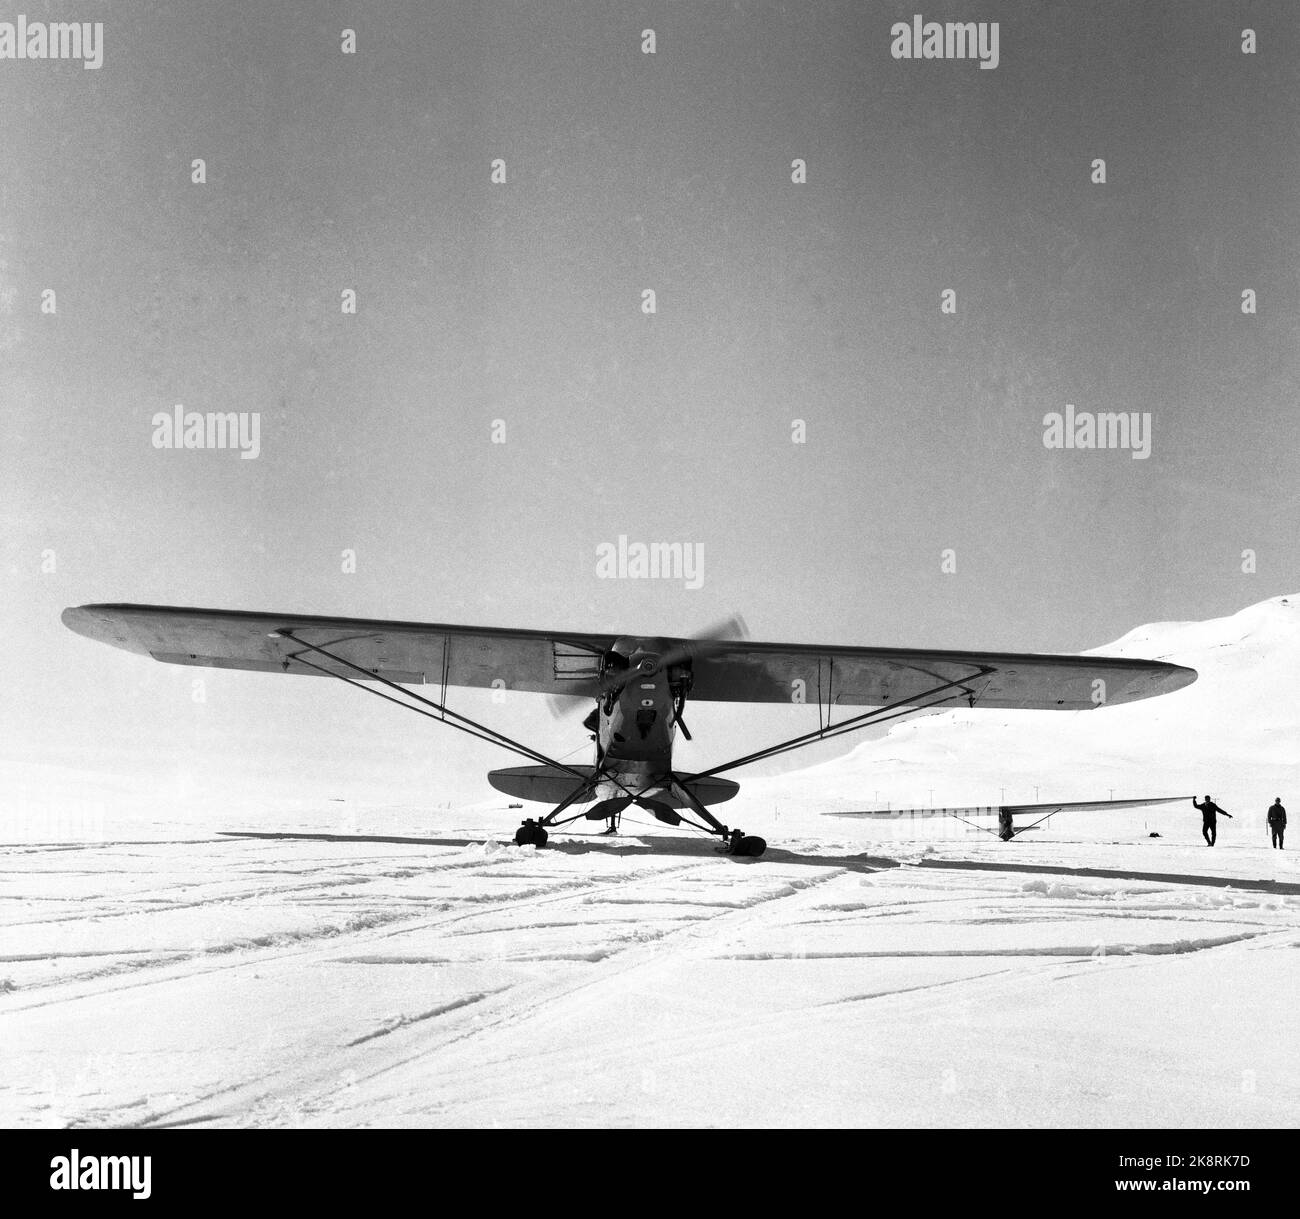 Eidsbugarden, Jotunheimen, 6. Mai 1961. Fünf Segelflugzeuge genießen sich in der Bergwelt. Zwei von ihnen landen auf dem Uranos-Gletscher, als die ersten Segelflugzeuge jemals auf einem Gletscher landeten. Als erster landet der dänische Möbelpolsterer Robert Nielsen aus Silkeborg. Der Norweger Bakkasserer, Bjarne Bergsund landet auf Platz 2. Hier die motorisierten kleinen Flugzeuge verwendet, um die Segelflugzeuge hochzuziehen, ein Piep Cub. Foto; Ivar Aaserud / NTB Stockfoto